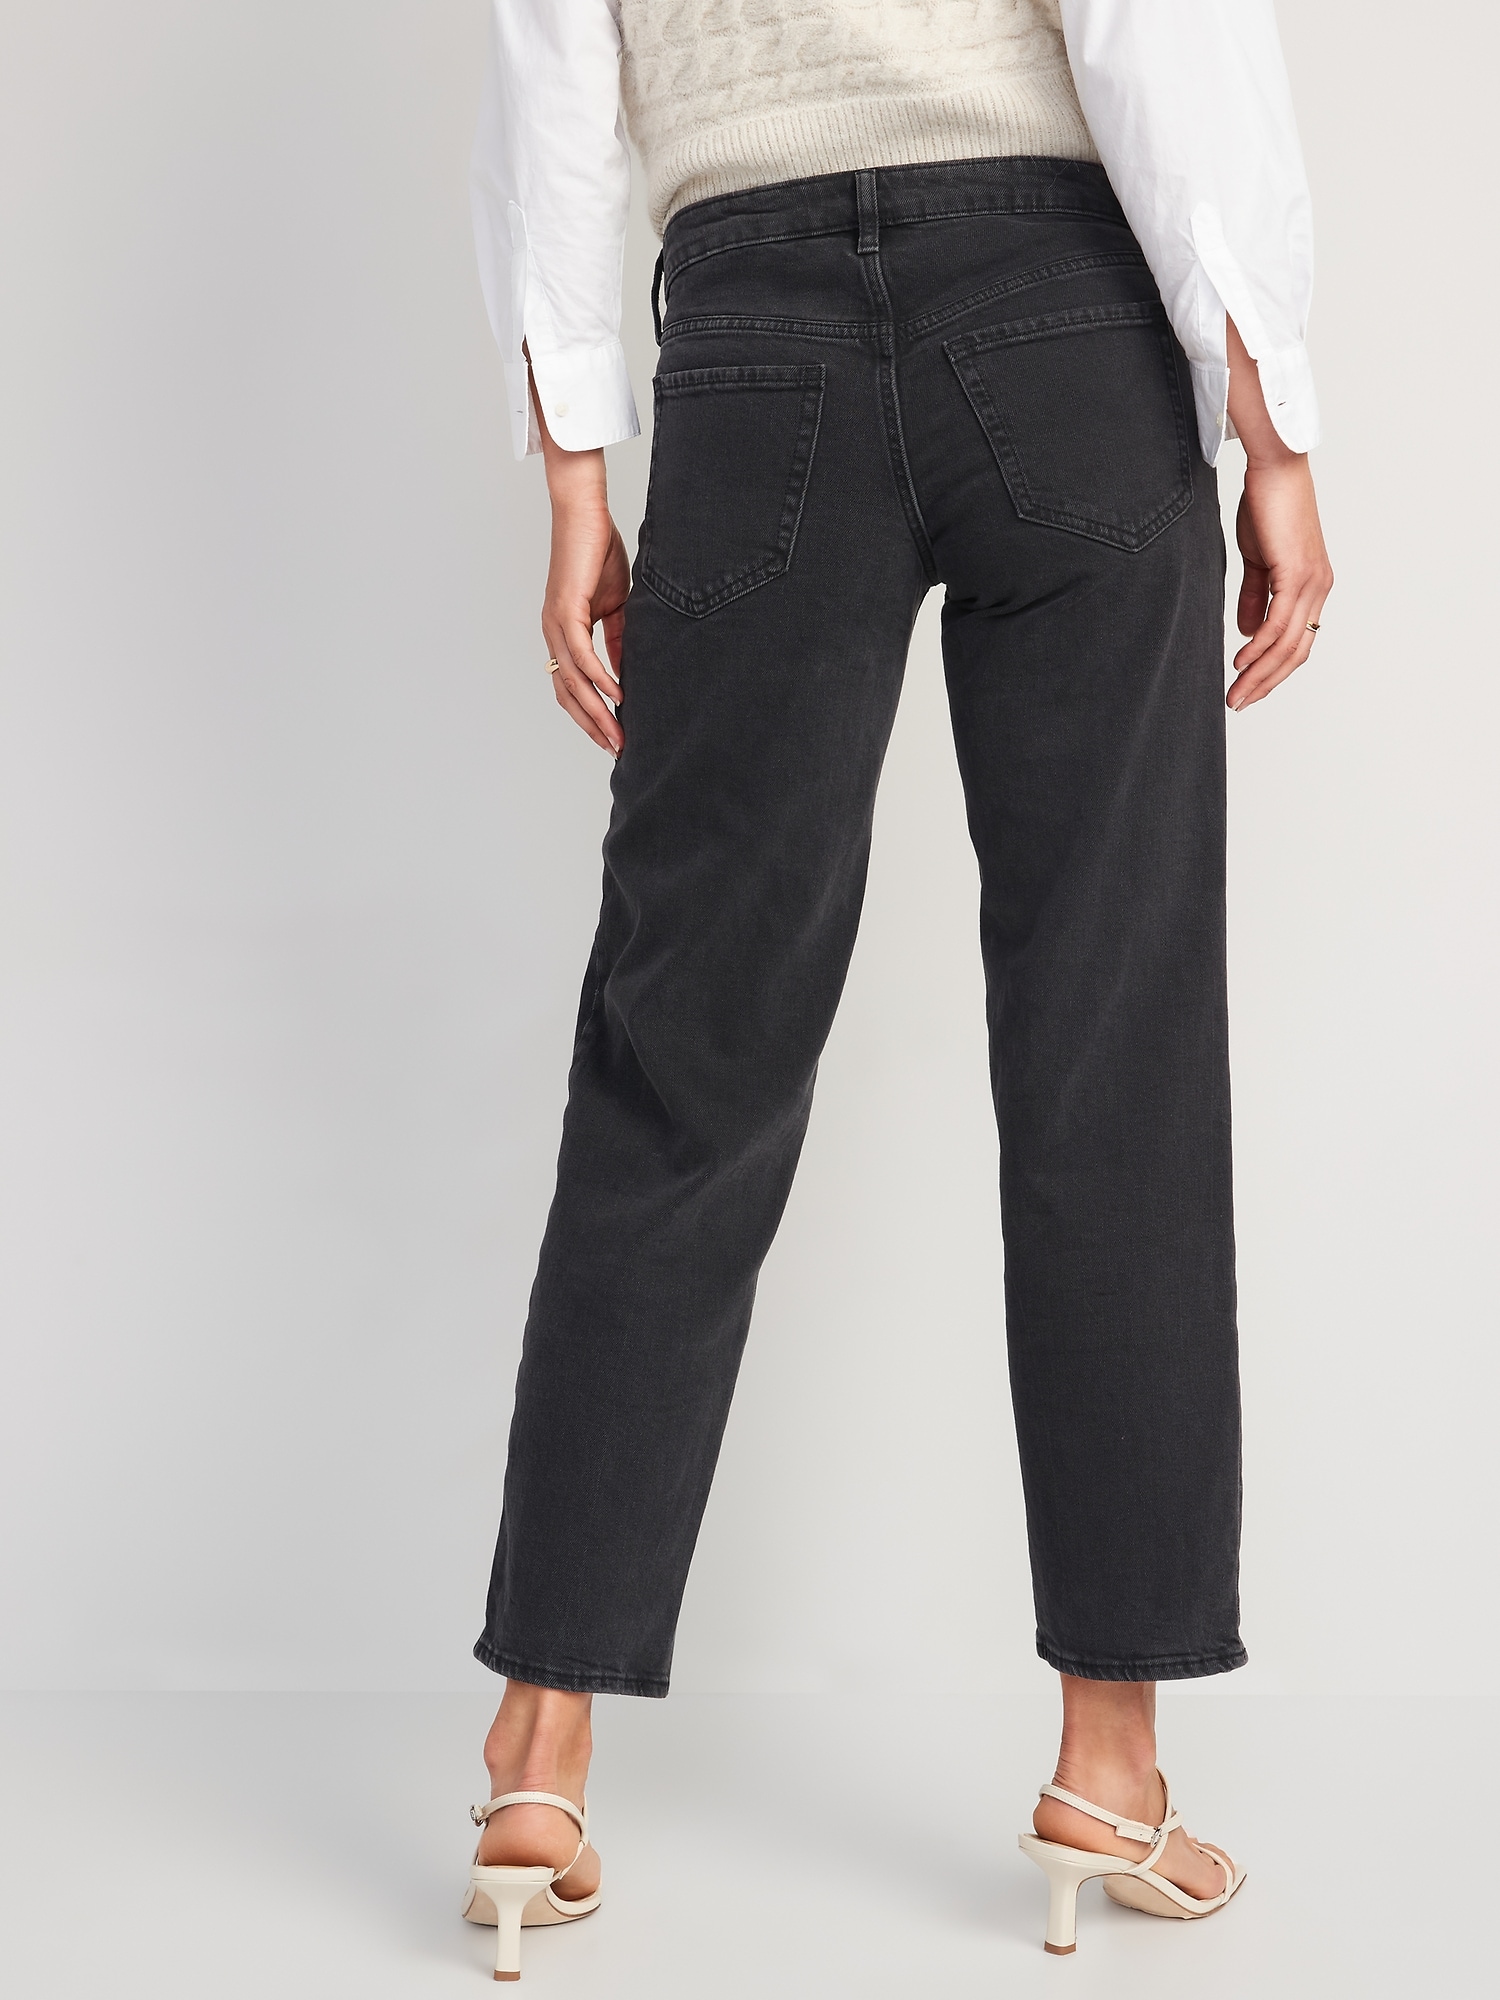 Low-Rise OG Loose Black Jeans for Women | Old Navy